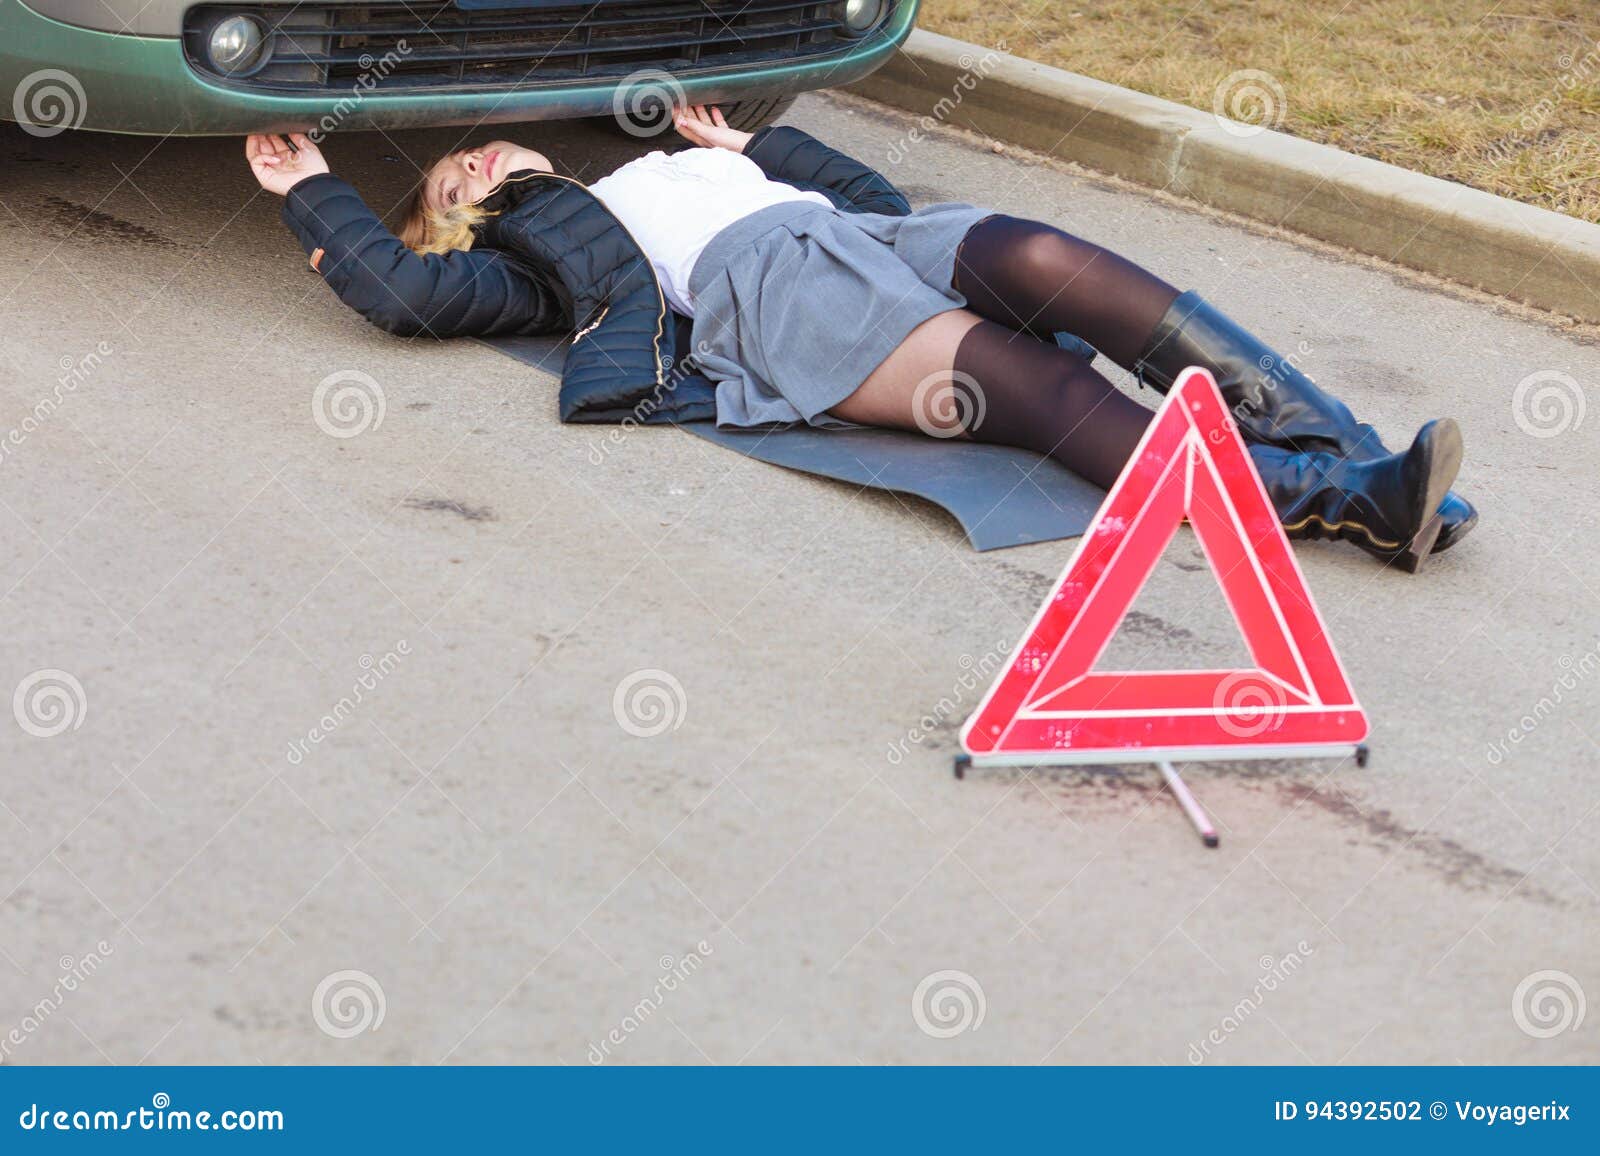 Женщина разбила машину. Девушка лежит под машиной. Лежачий автомобиль. Фотографировать лёжа автомобиль. Картинки девушки на машинах лежат.